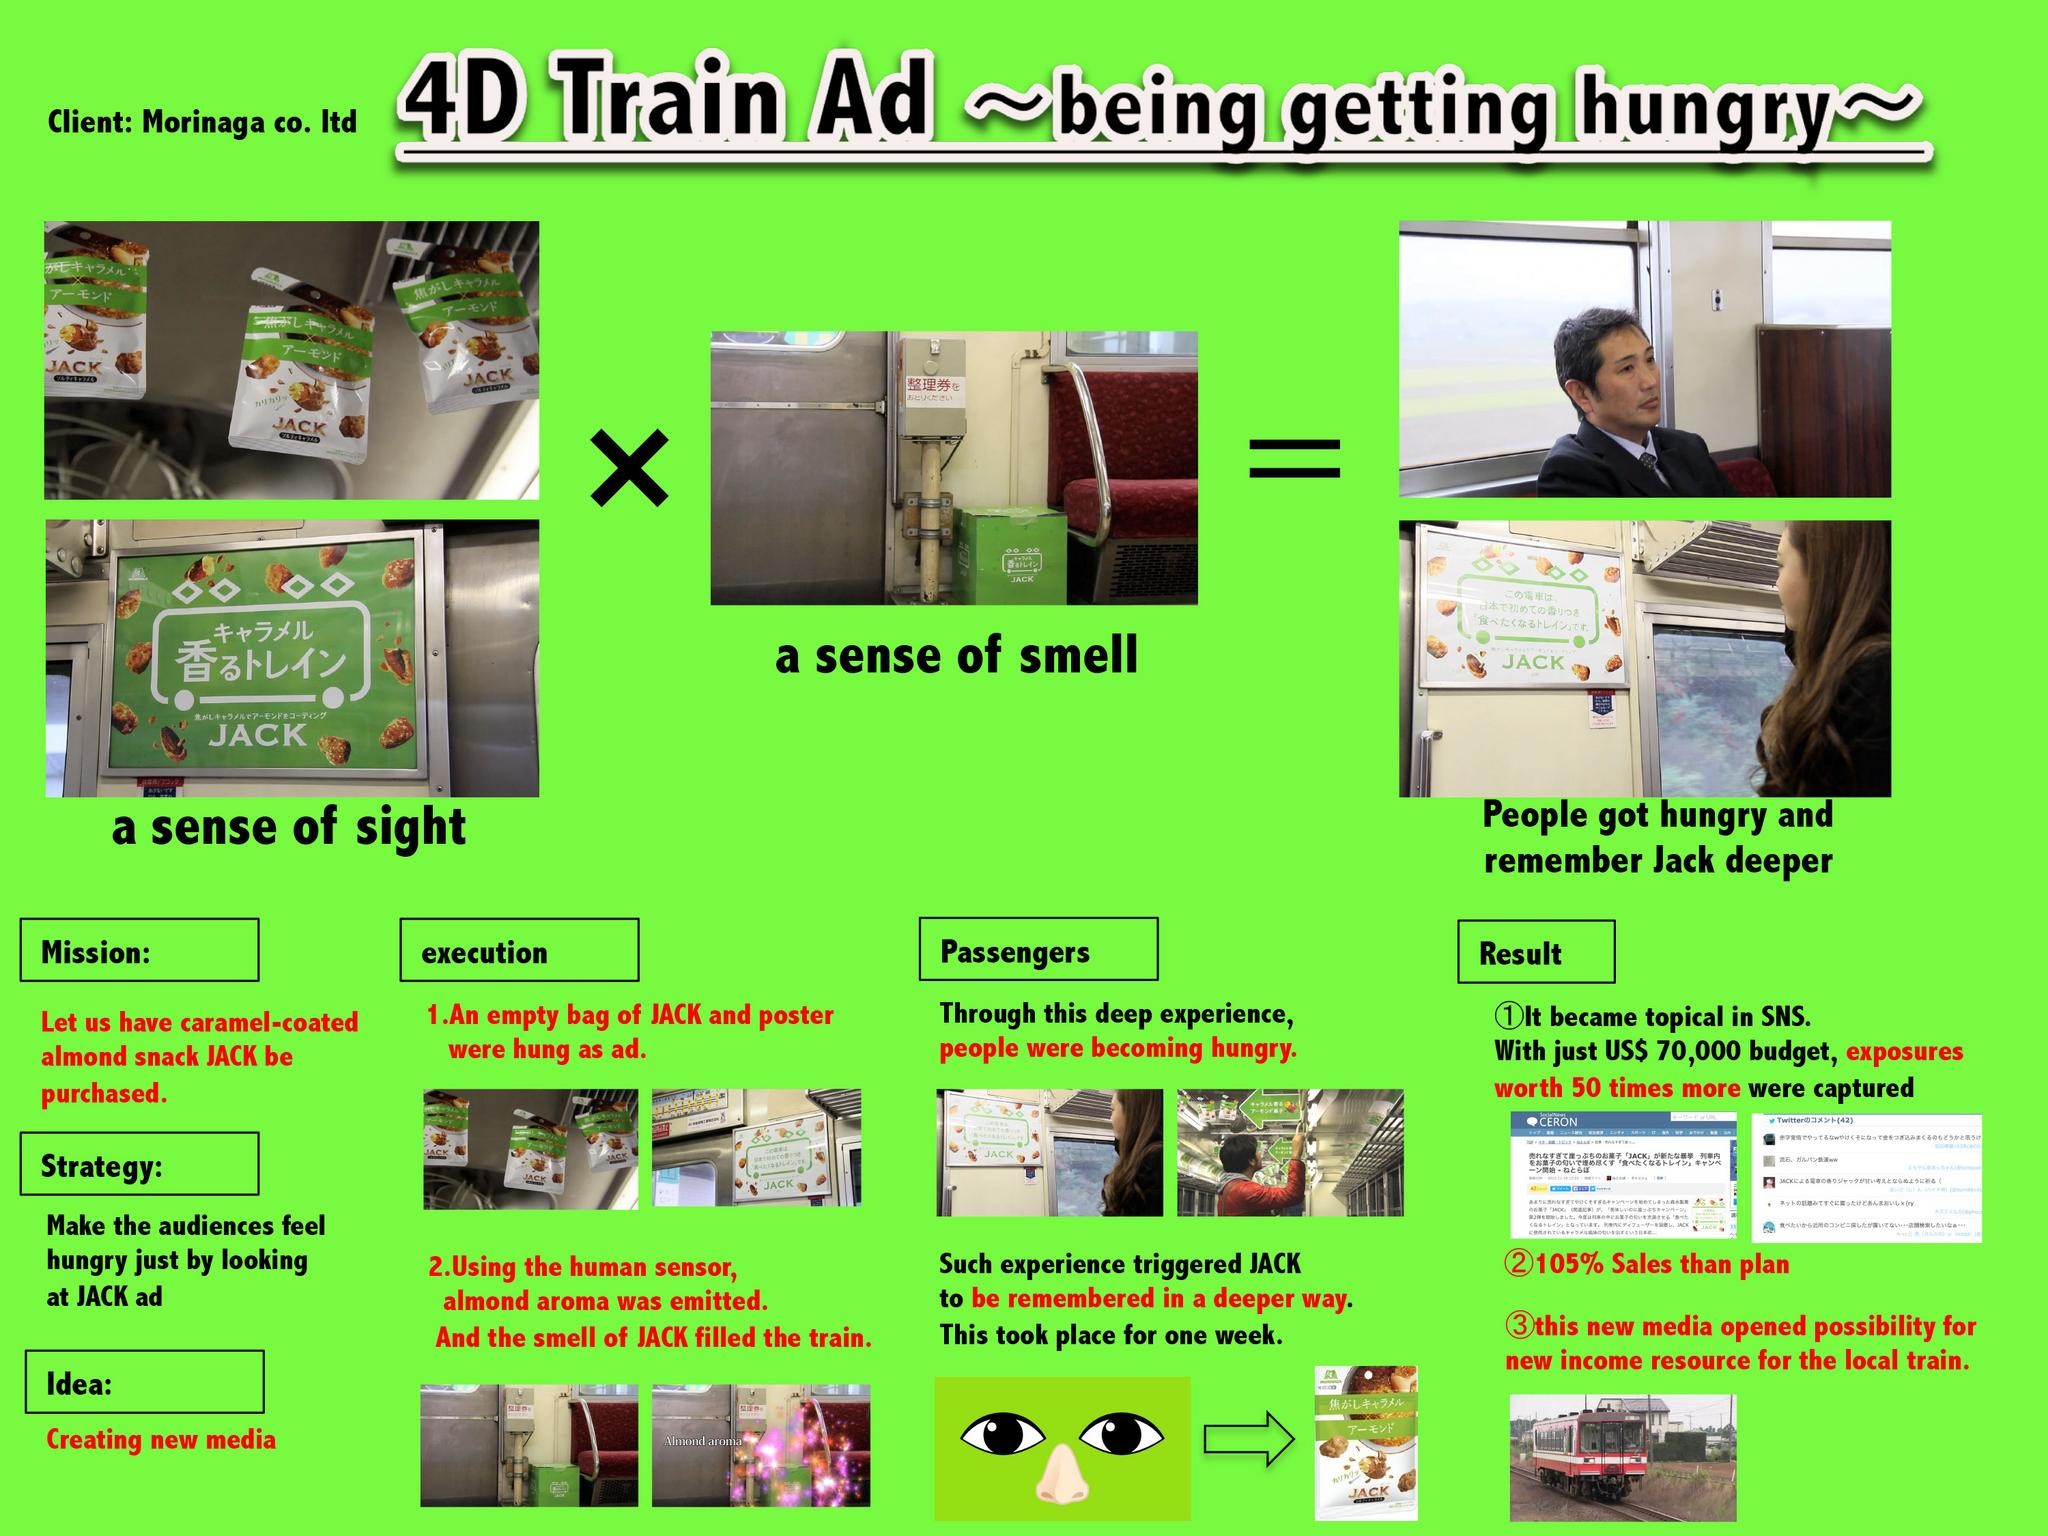 The 4D train Ad